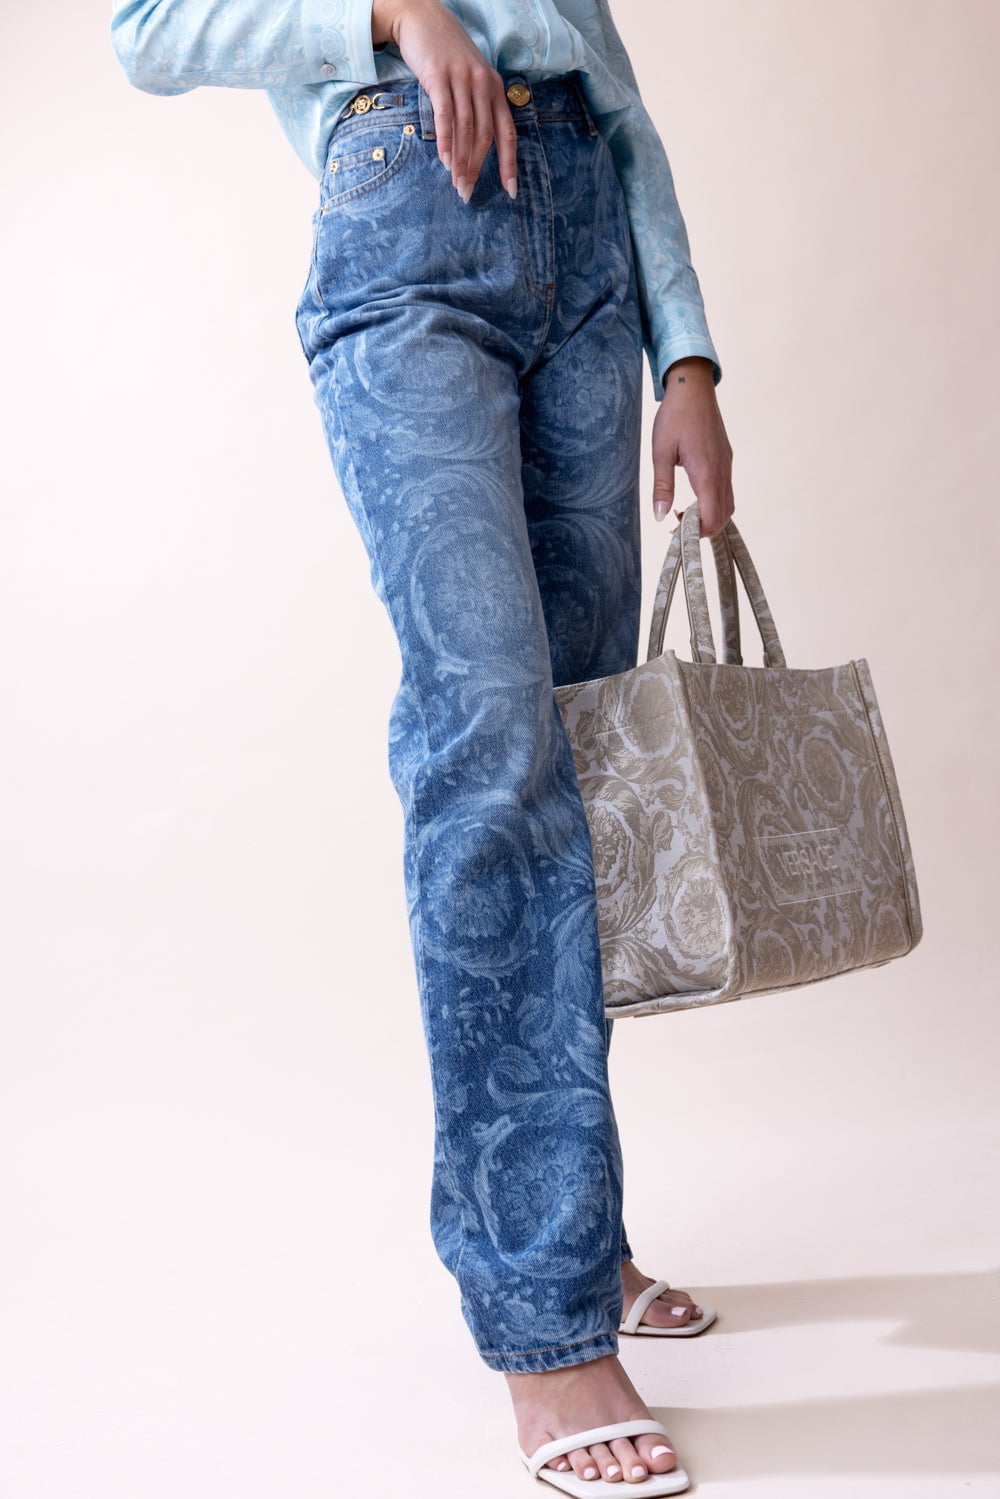 Oversized cargo jean, Twik, Women's Jeans Online